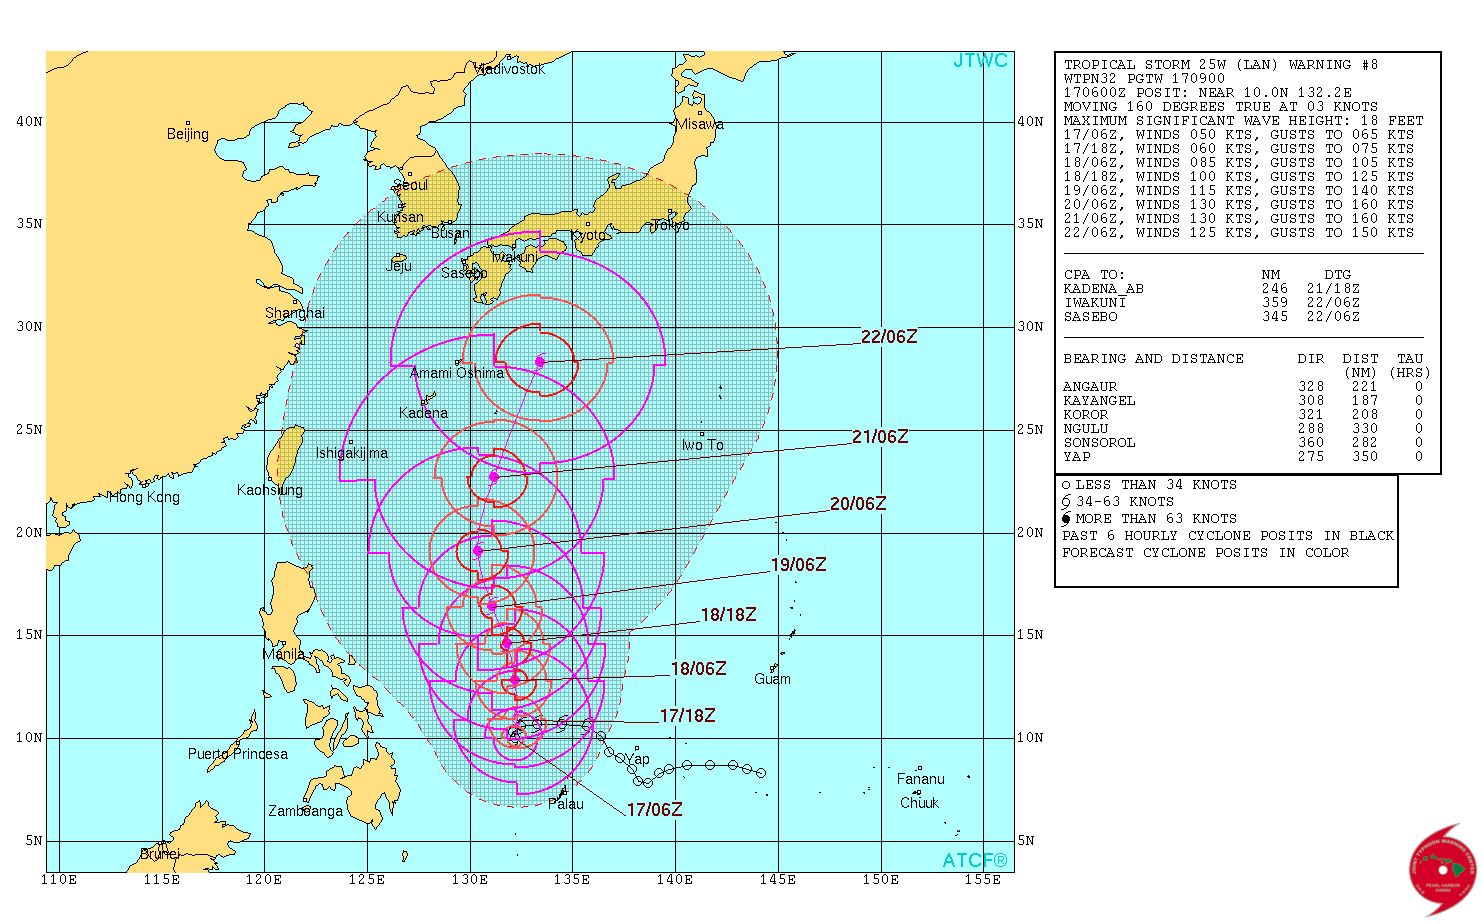 Severe Tropical Storm Lan JTWC forecast track October 16, 2017